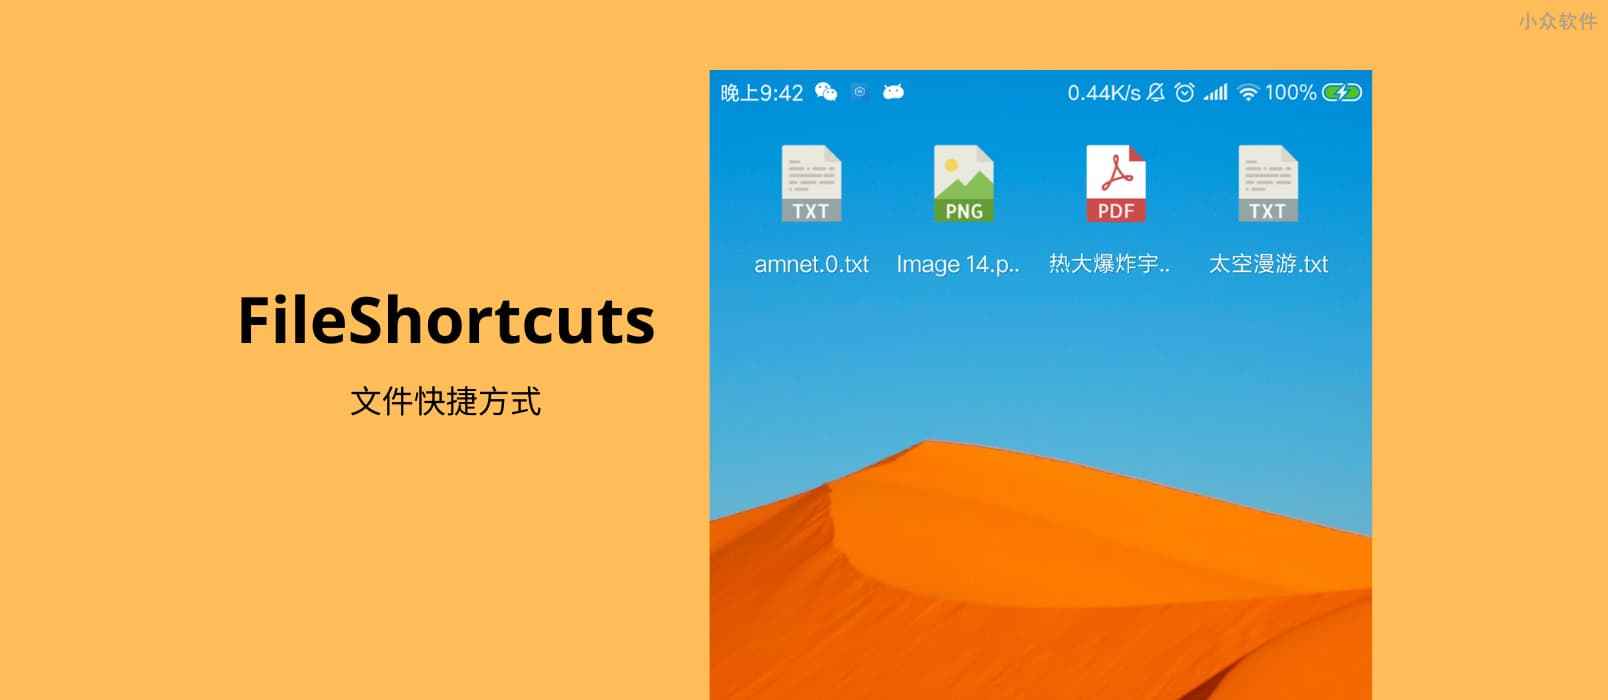 FileShortcuts - 在 Android 桌面创建文档快捷方式 1